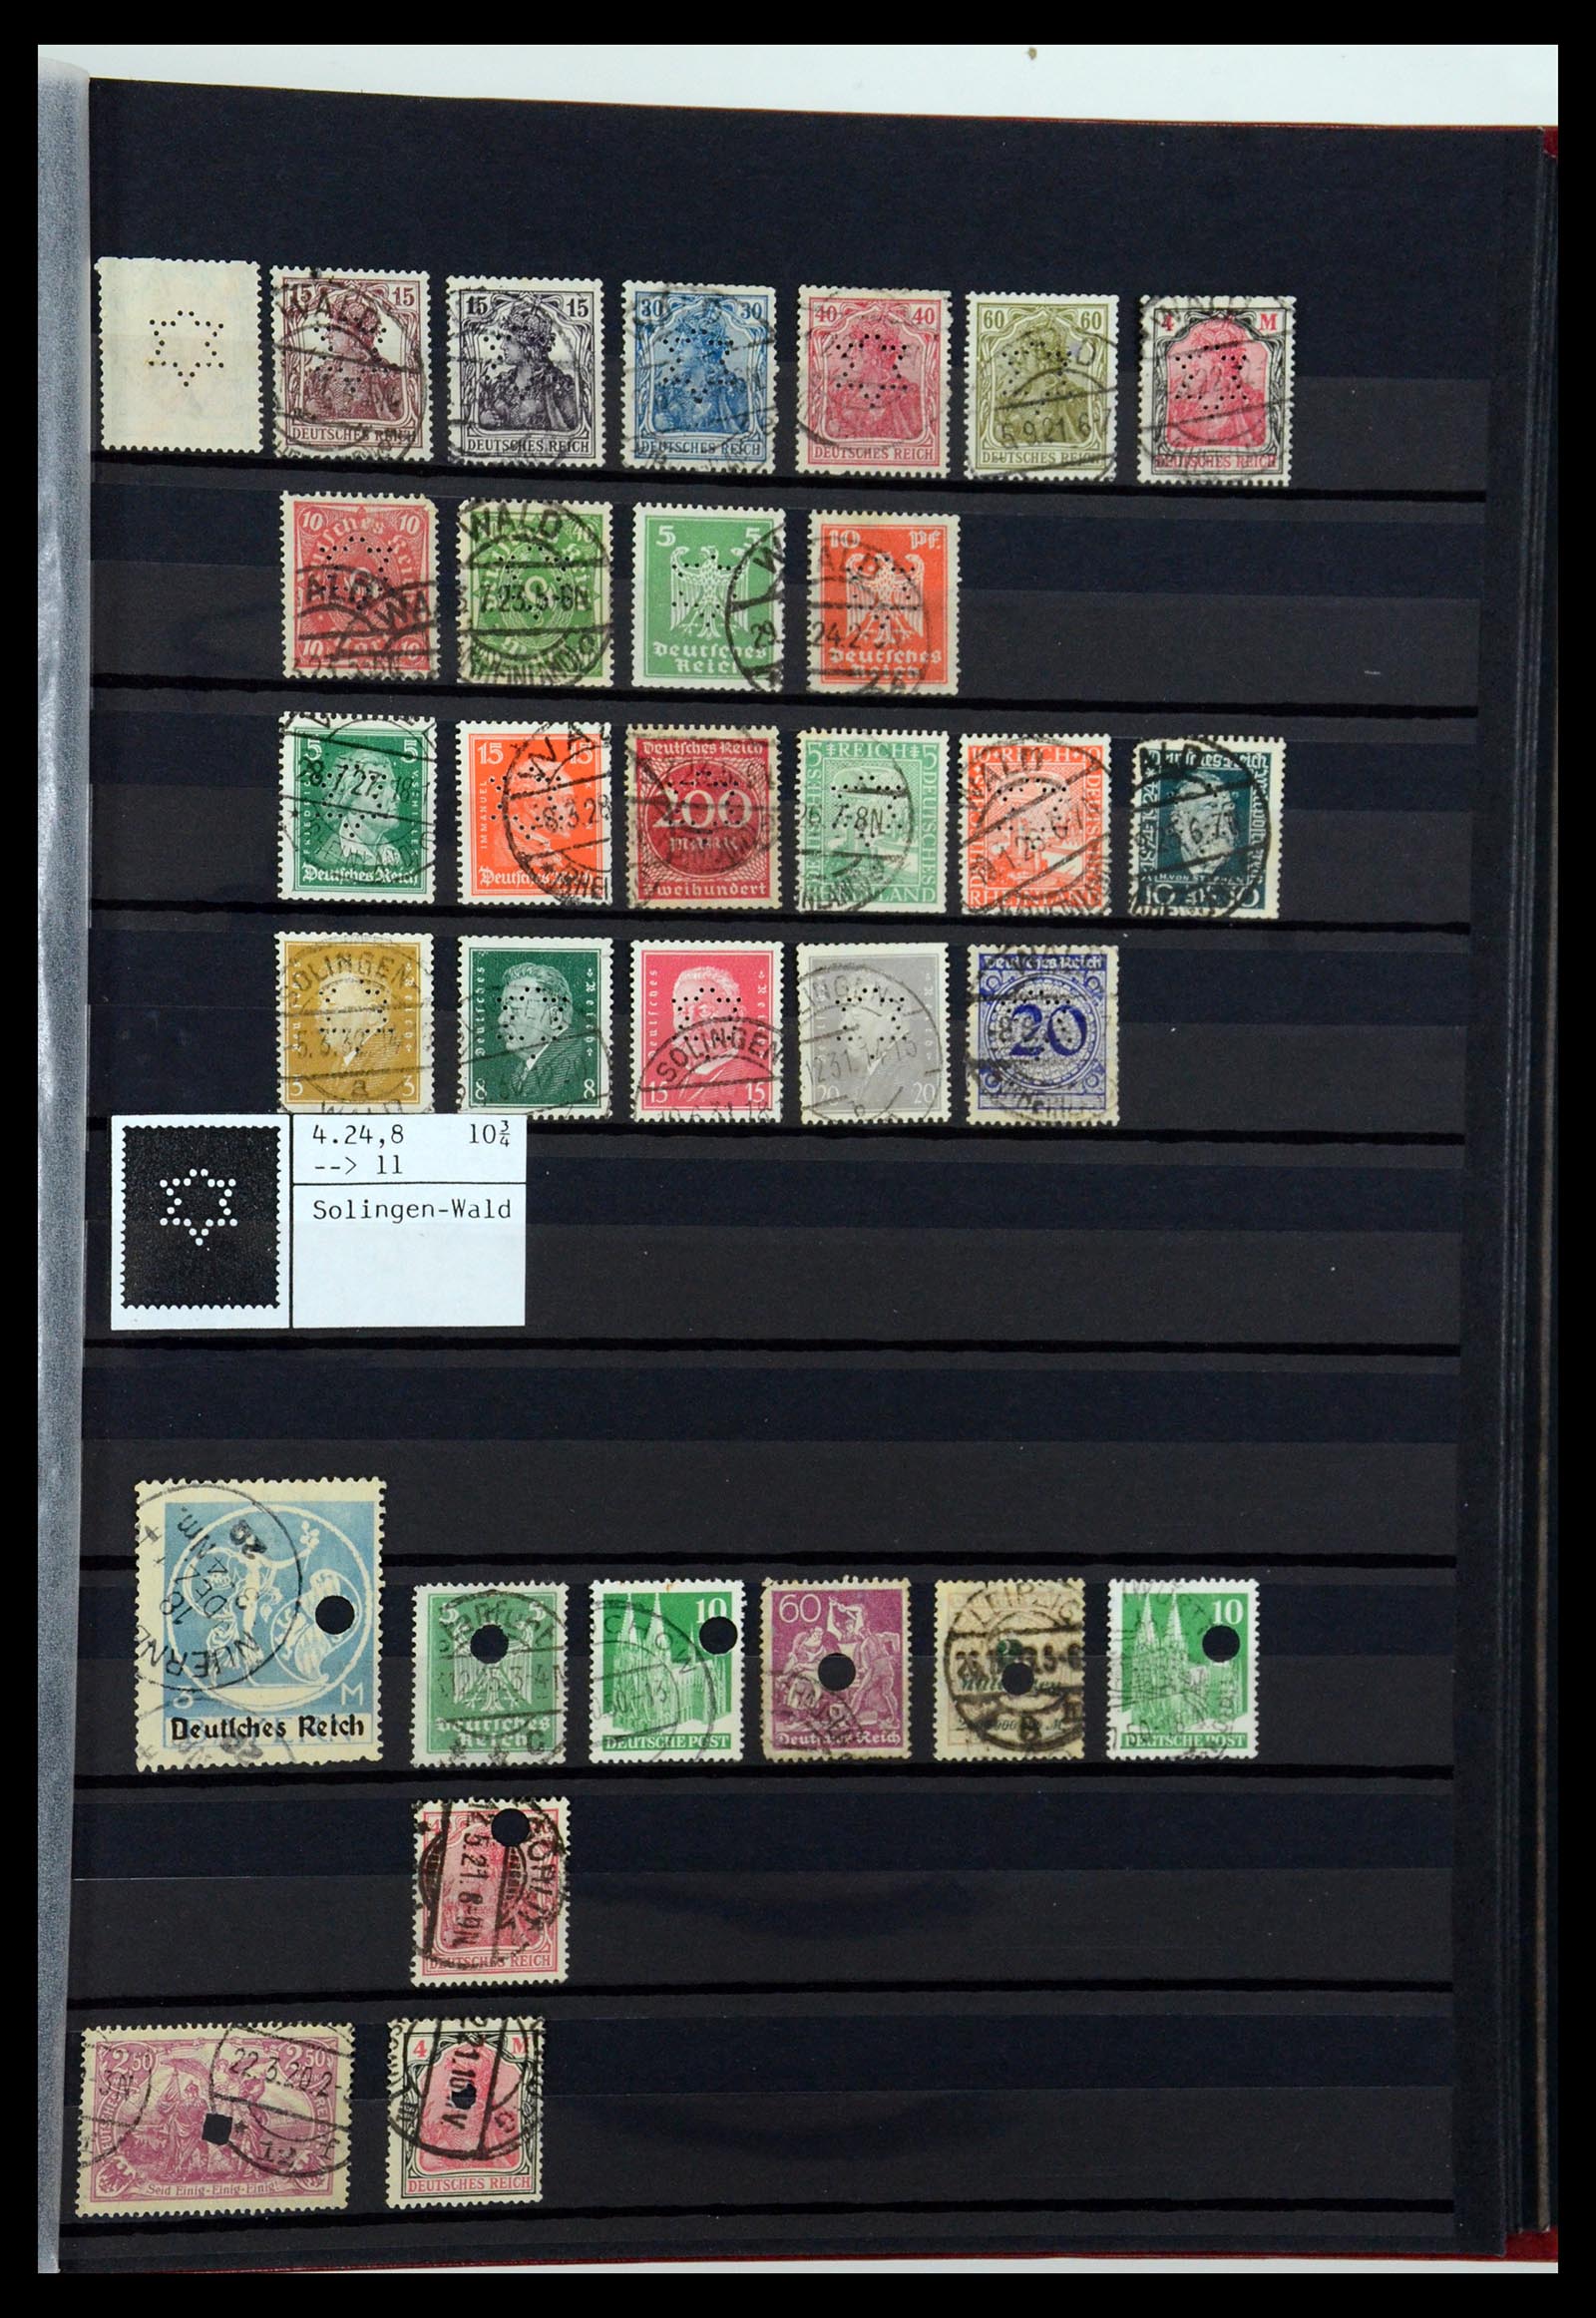 36405 352 - Stamp collection 36405 German Reich perfins 1880-1945.